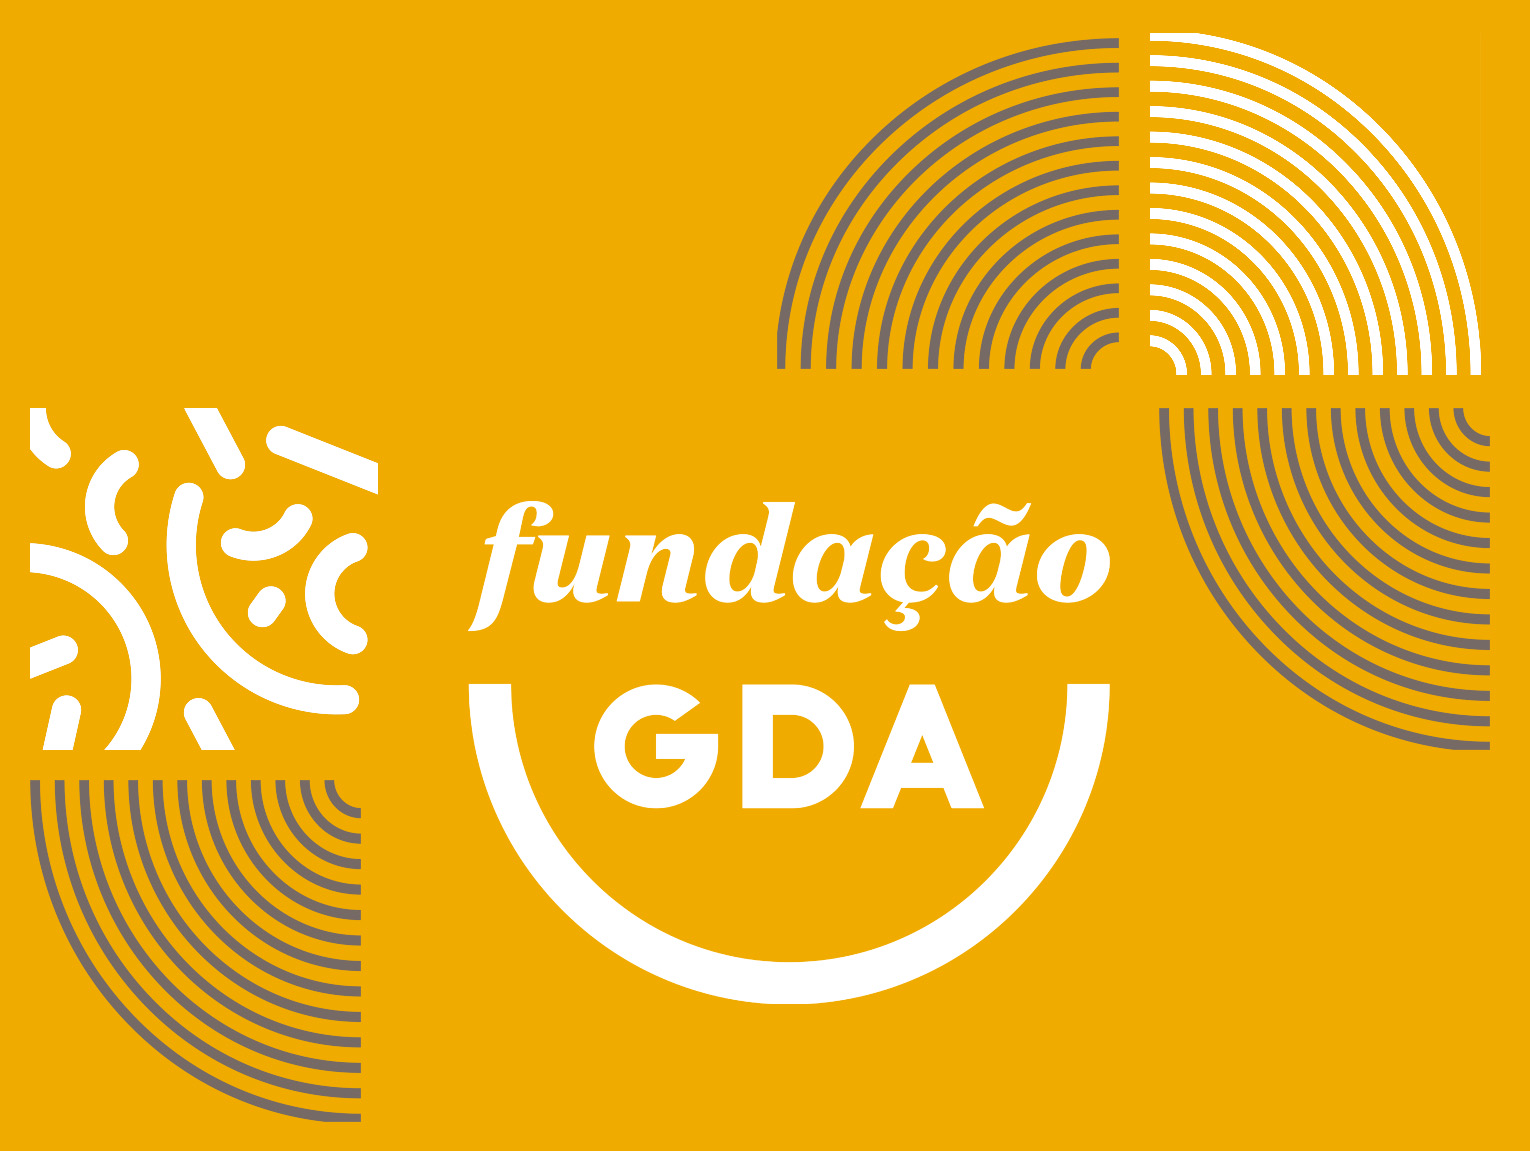 Vídeo Institucional da Fundação GDA